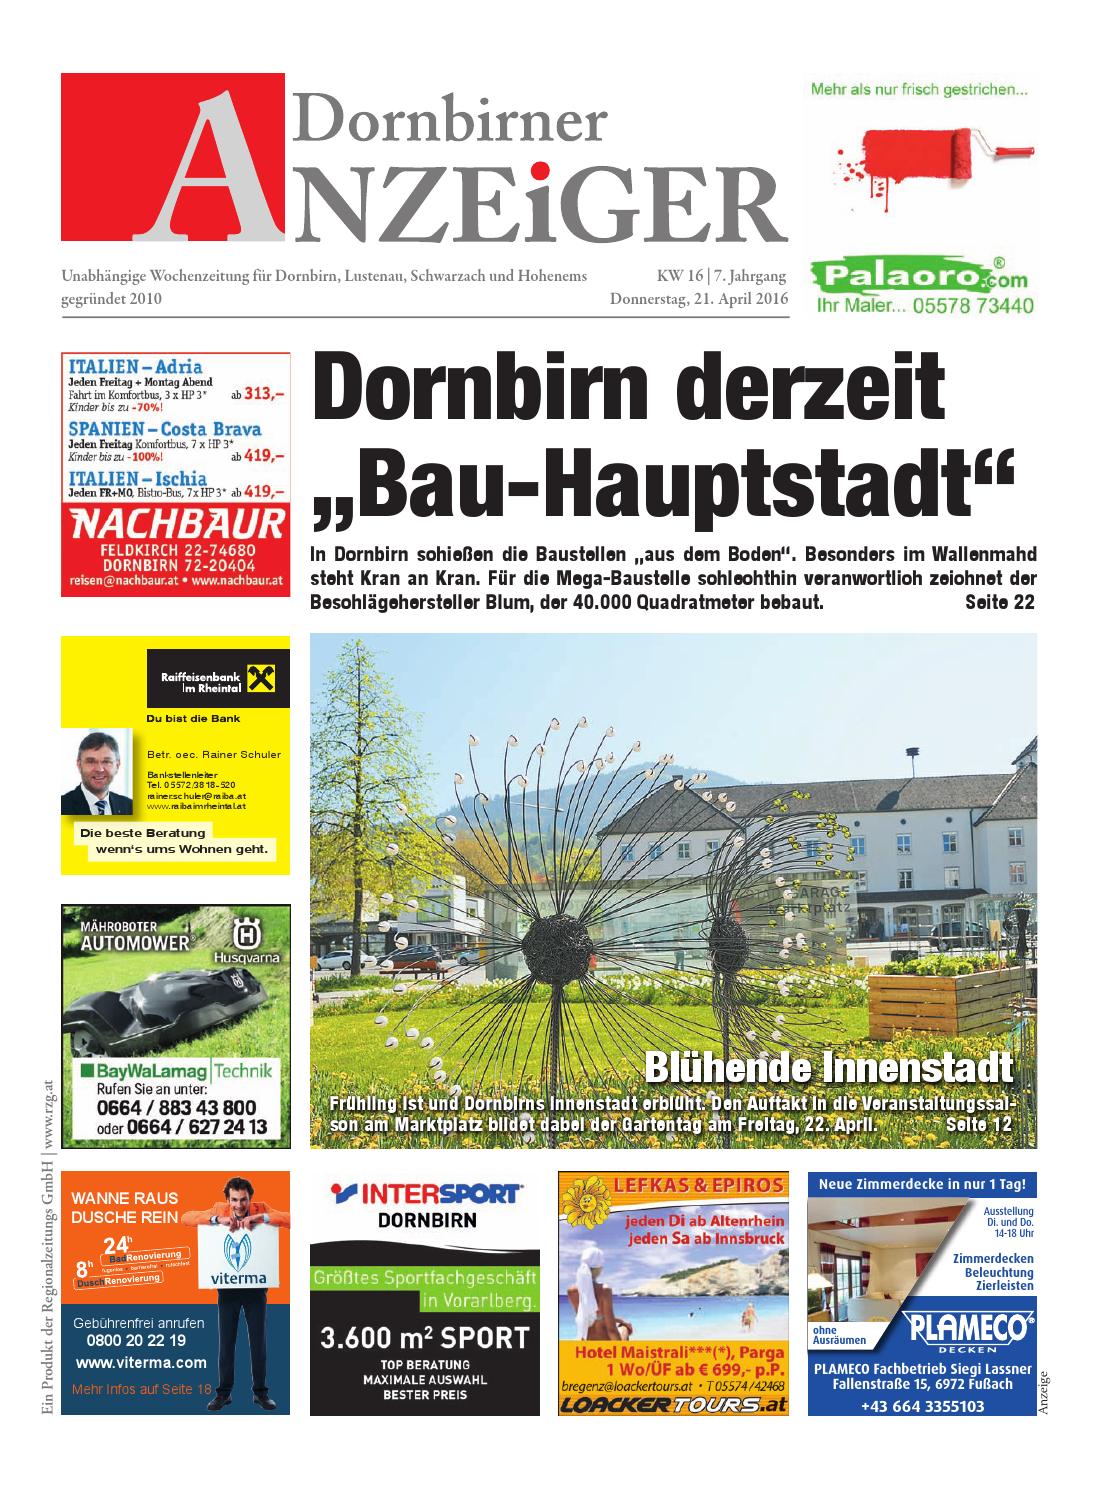 Katze Im Garten Begraben Genial Dornbirner Anzeiger 16 by Regionalzeitungs Gmbh issuu